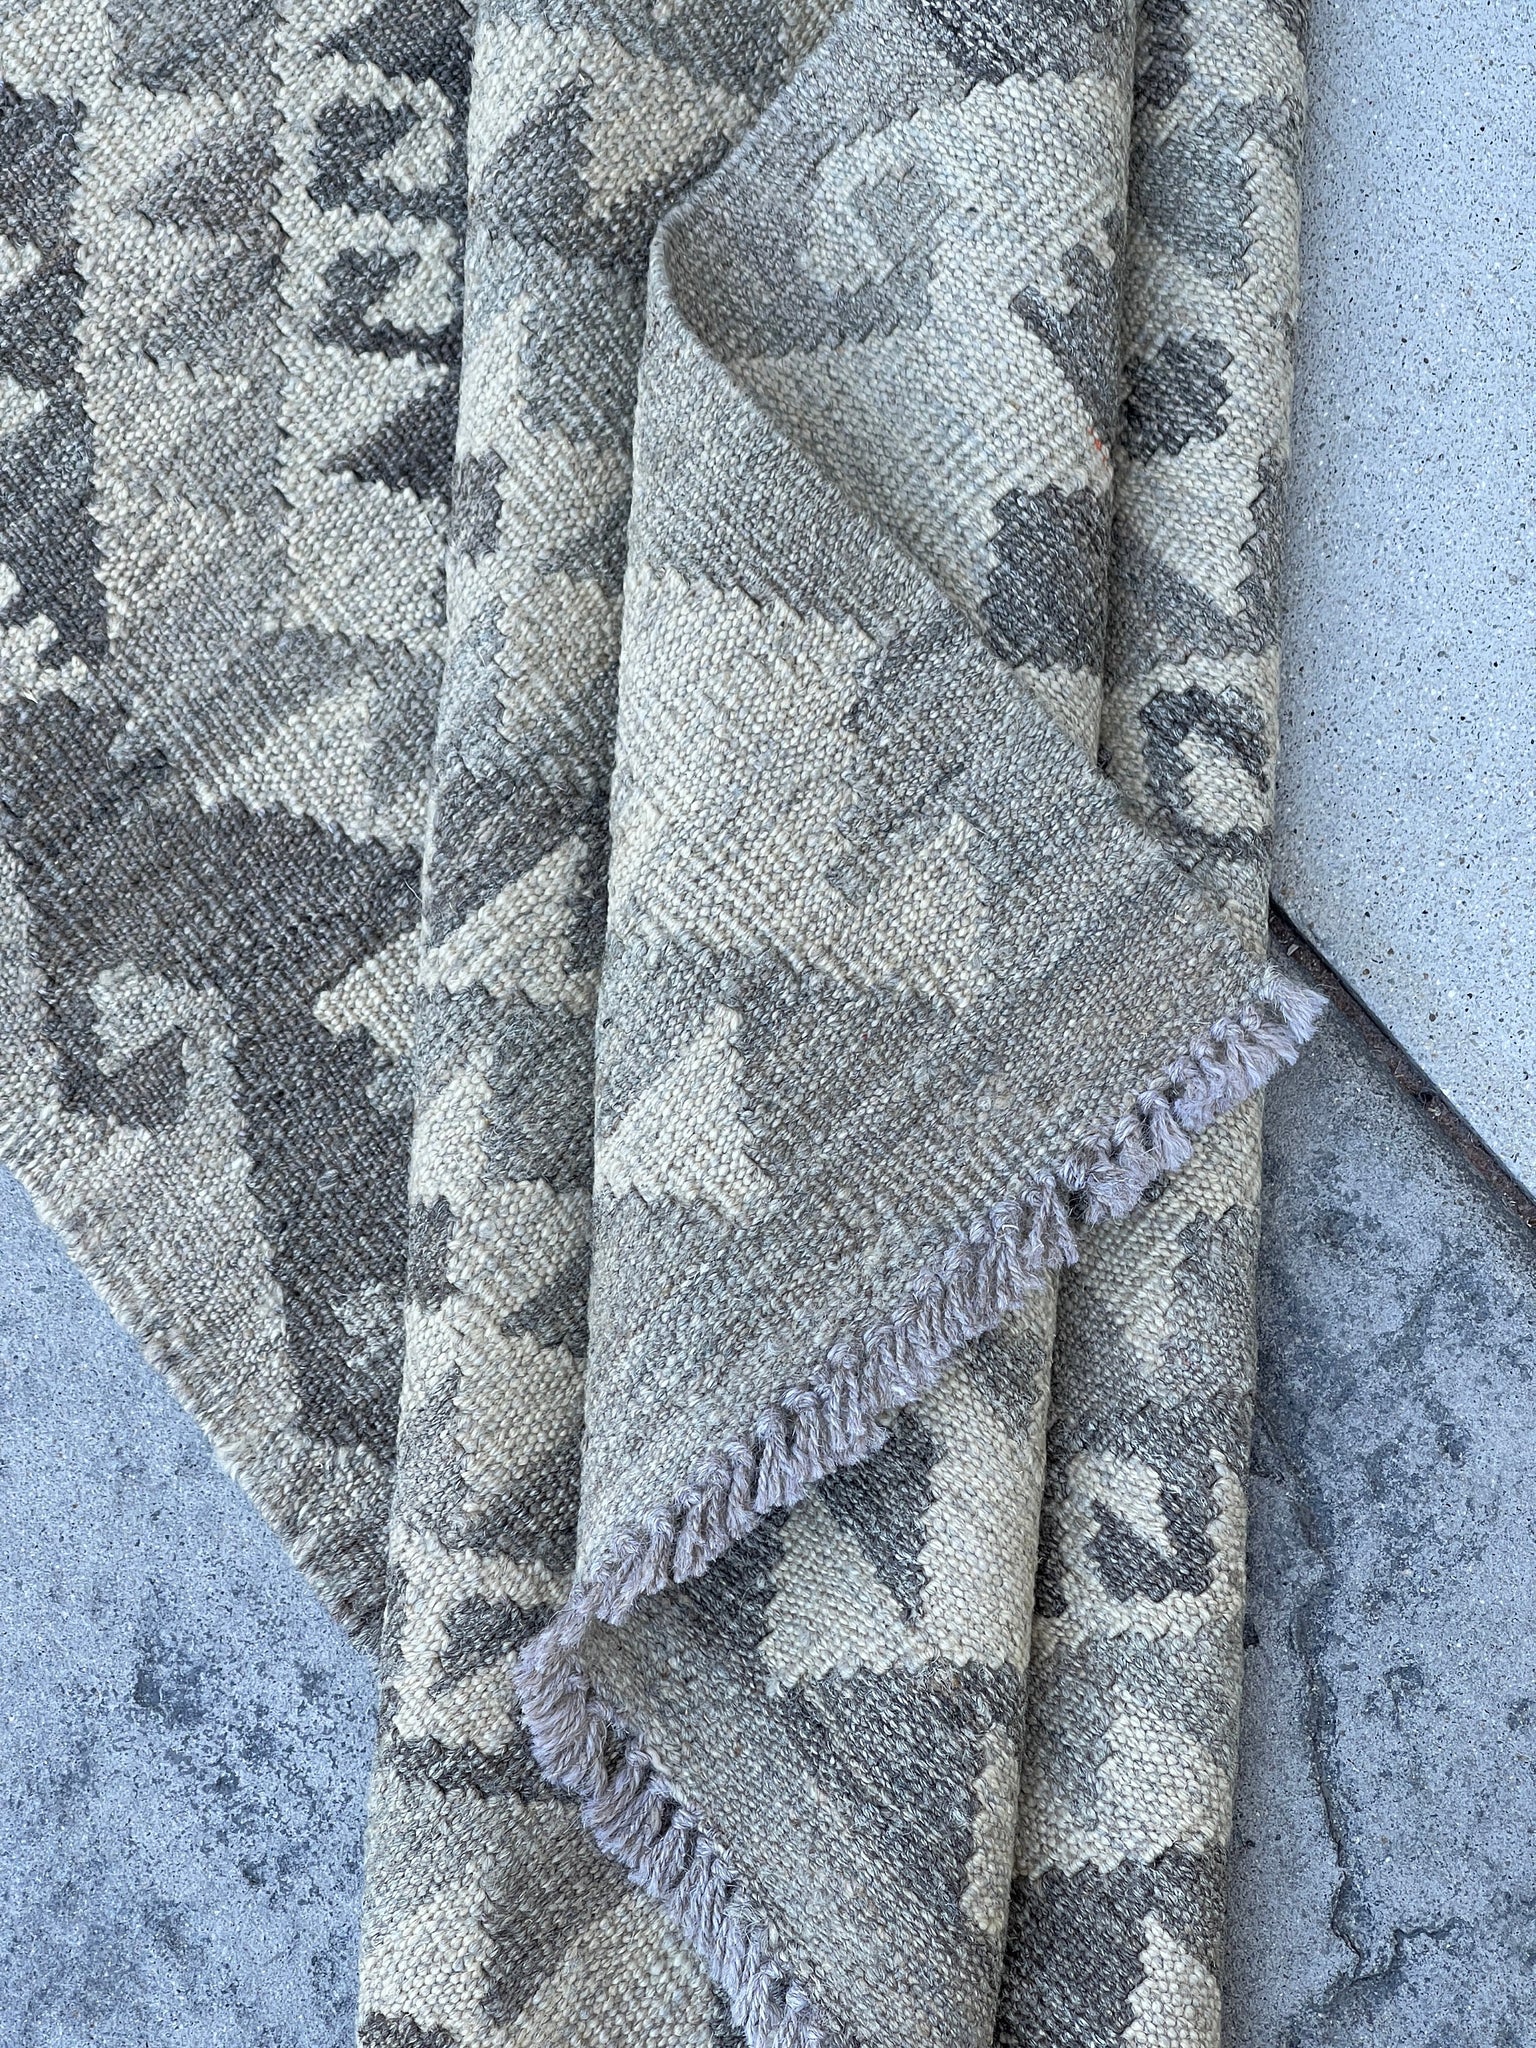 3x8 (90x245) Handmade Afghan Kilim Runner Rug | Light Grey Gray Beige | Flatweave Flat Weave Tribal Turkish Moroccan Oriental Wool